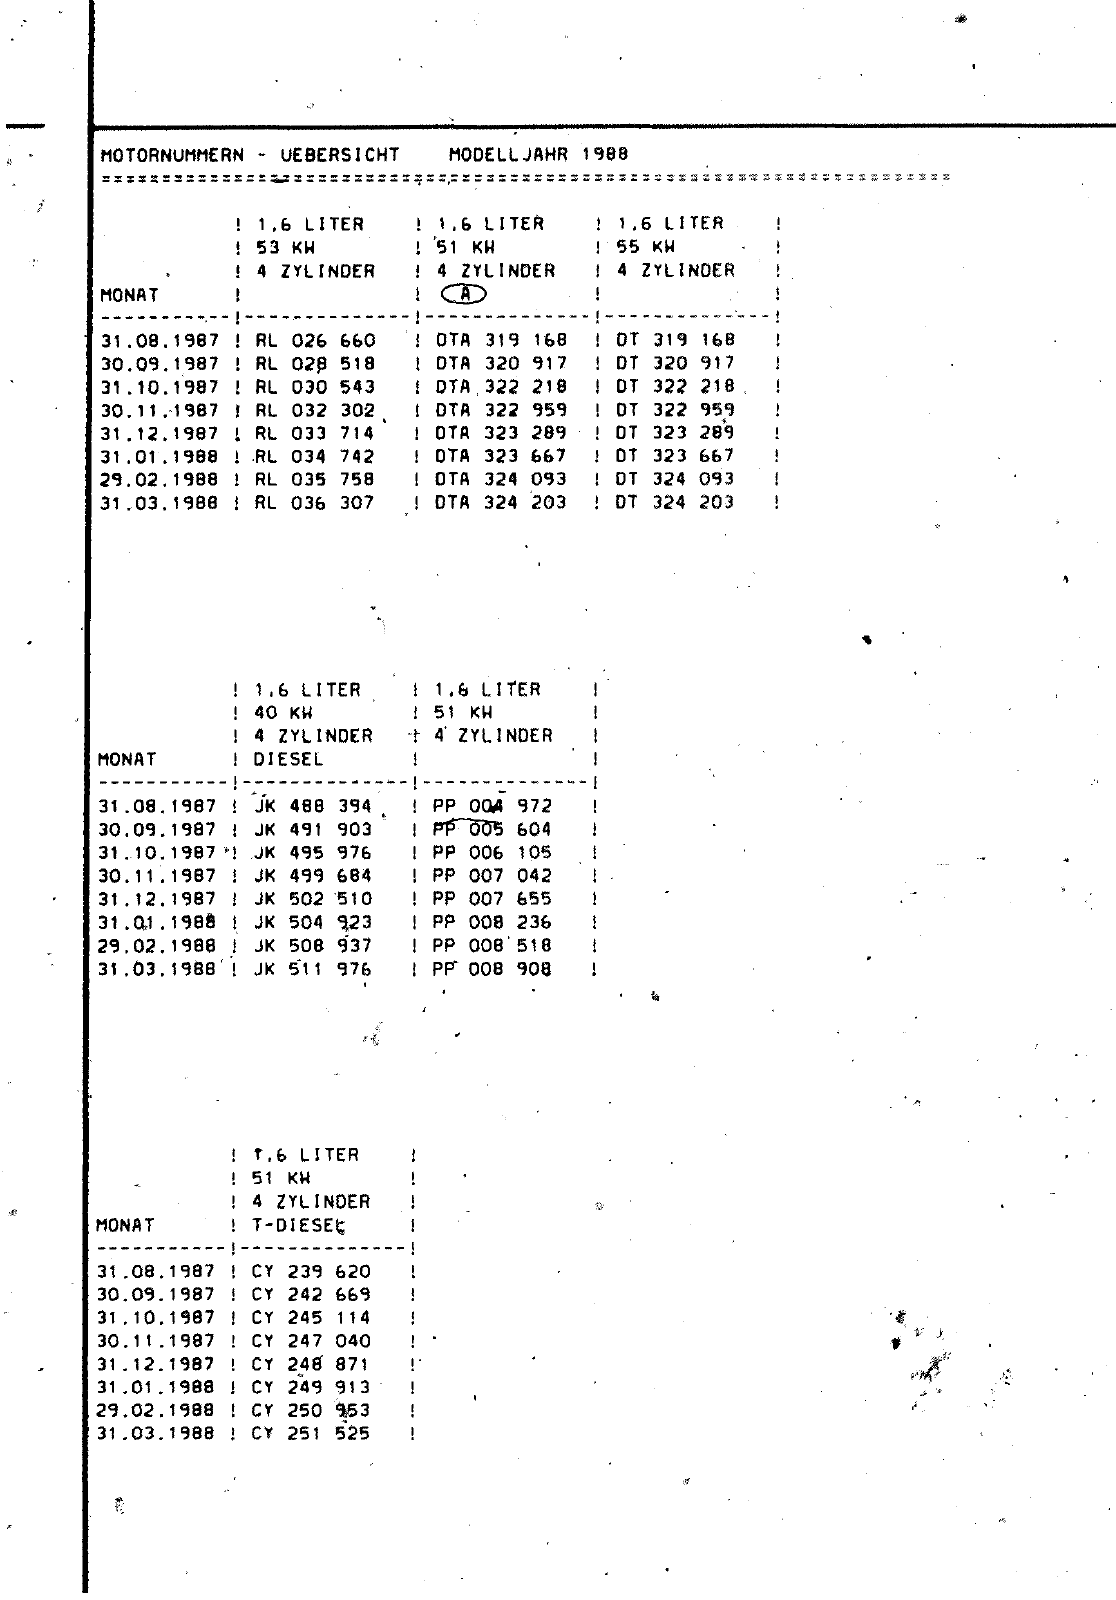 Vorschau Passat Mod 87-88 Seite 17